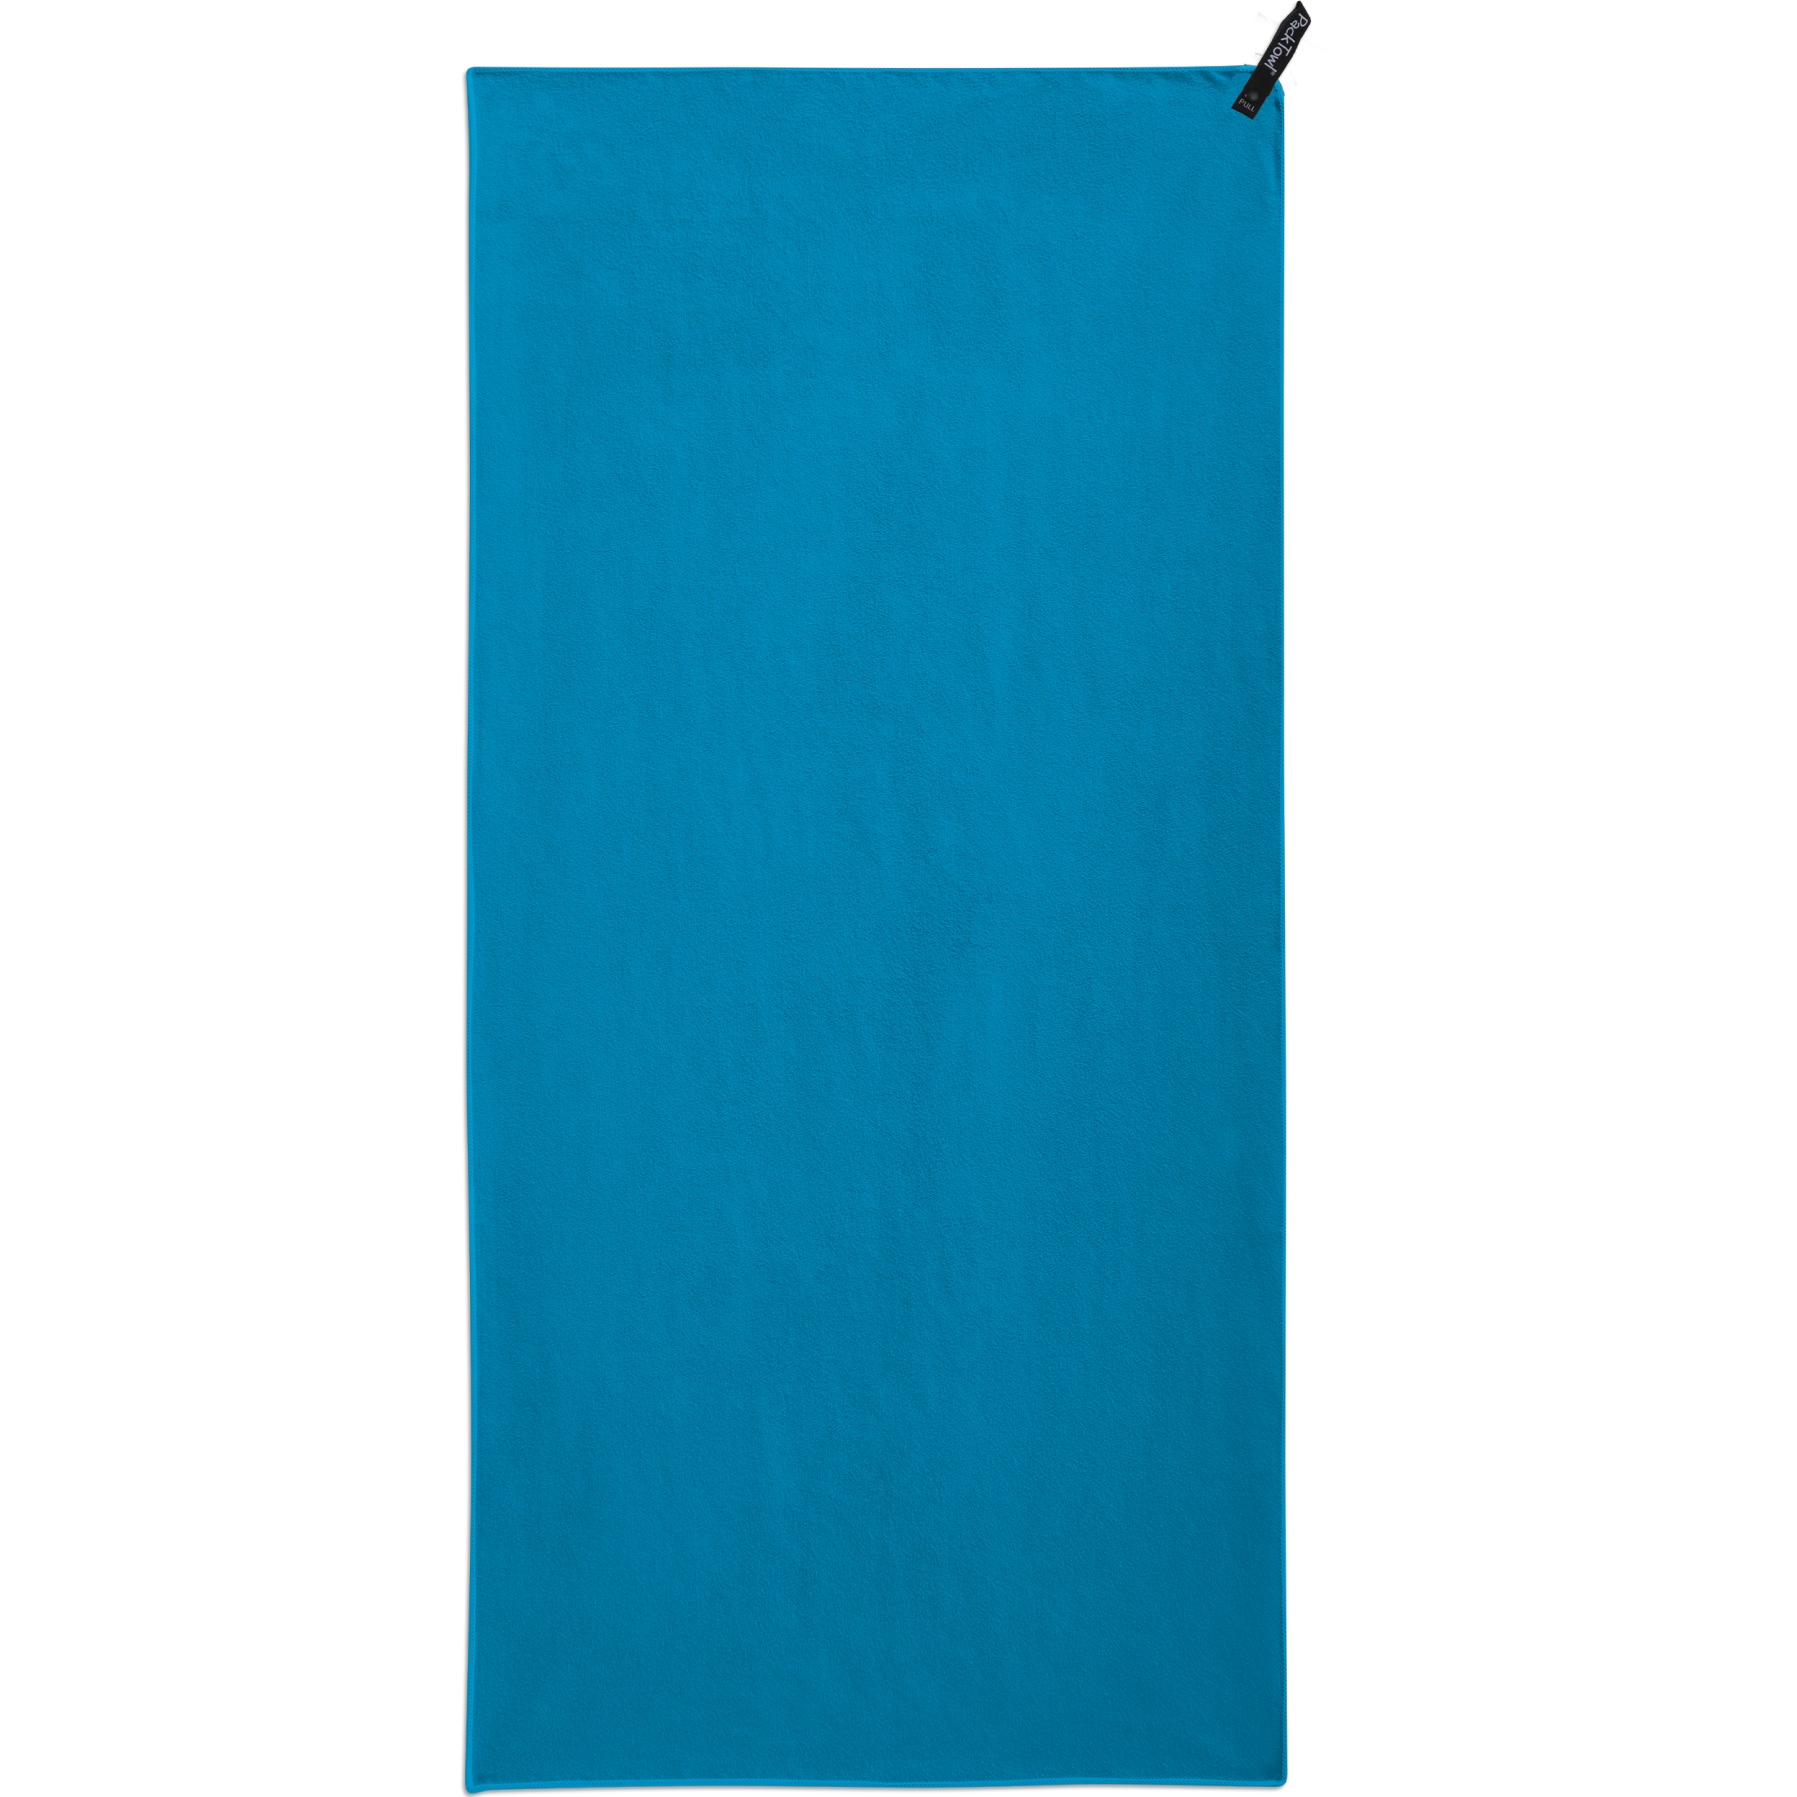 Productfoto van PackTowl Personal Face Handdoek - lake blue